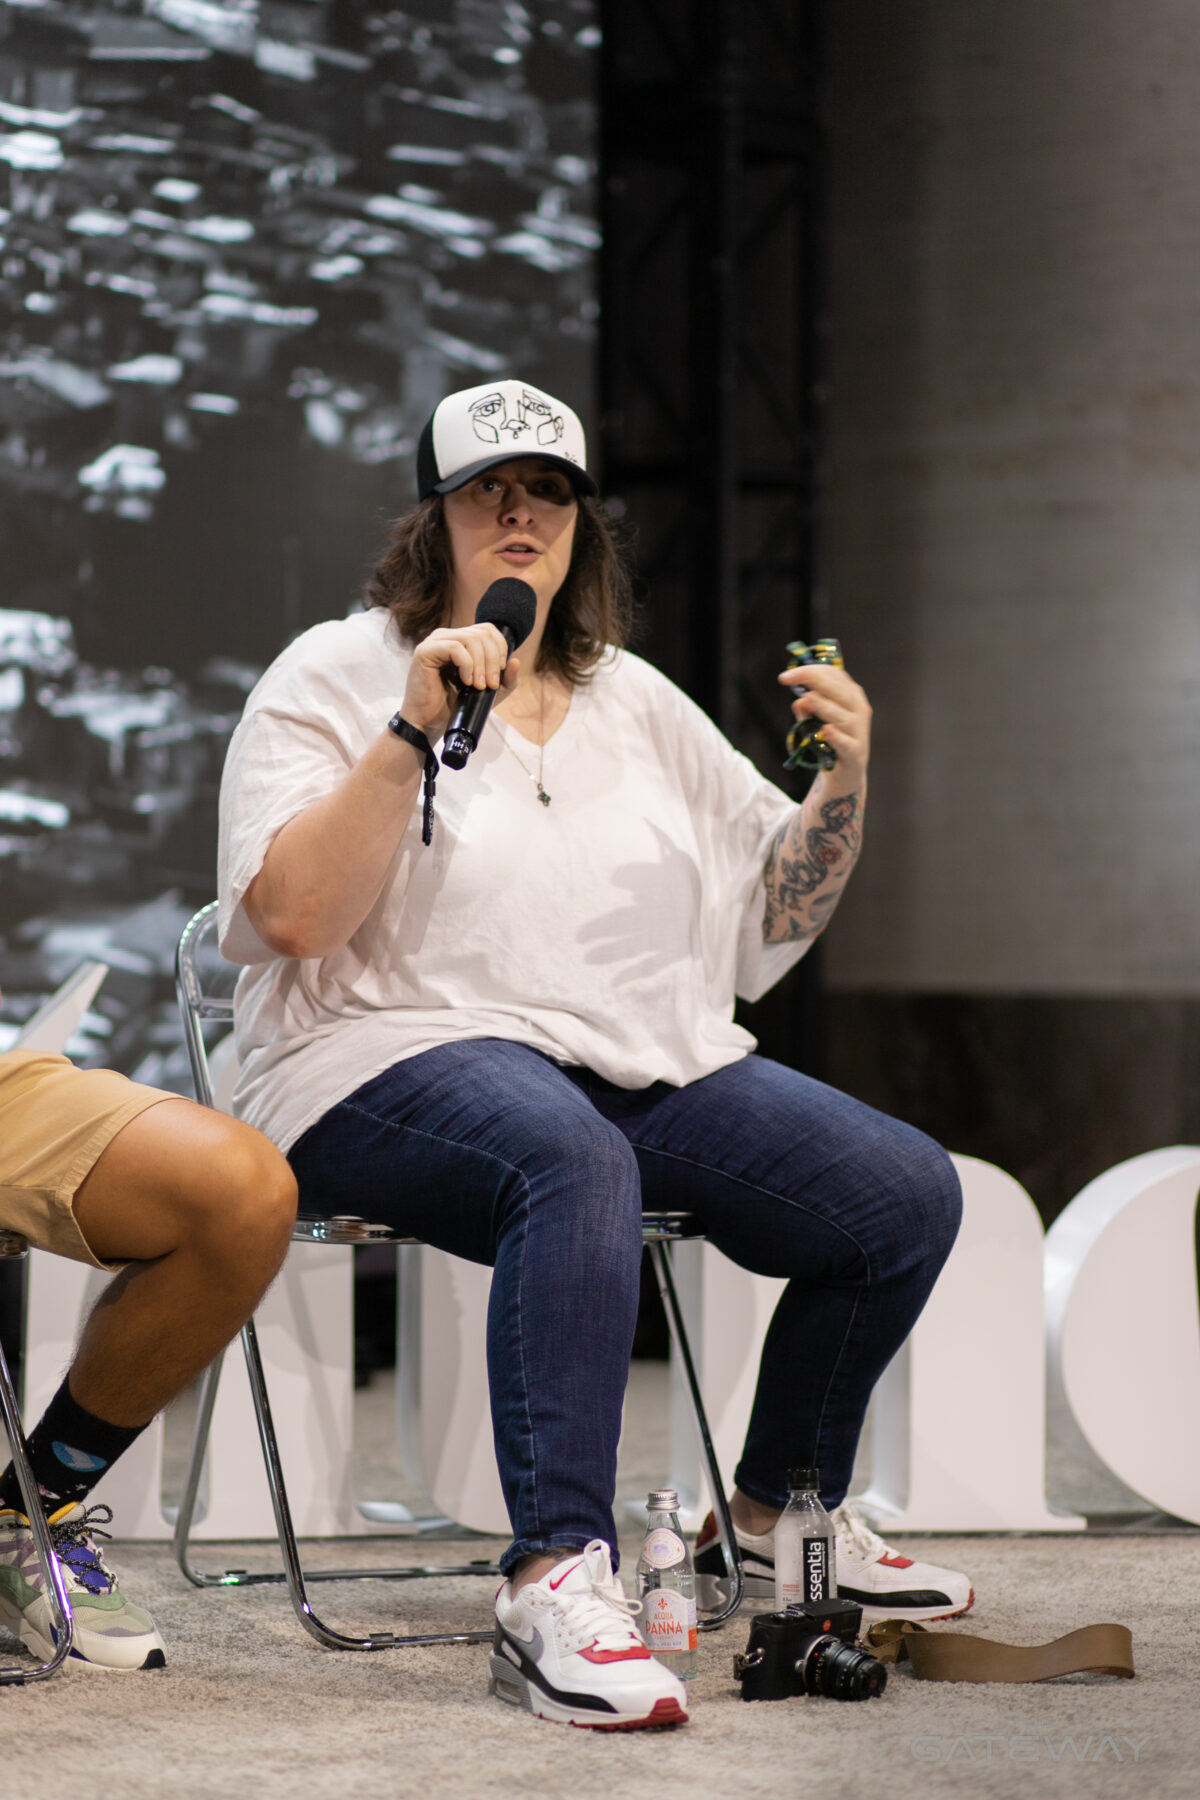 Une femme portant une casquette de baseball, une chemise blanche et un jean tient un microphone sur une scène et fait des gestes avec sa main tout en parlant. 